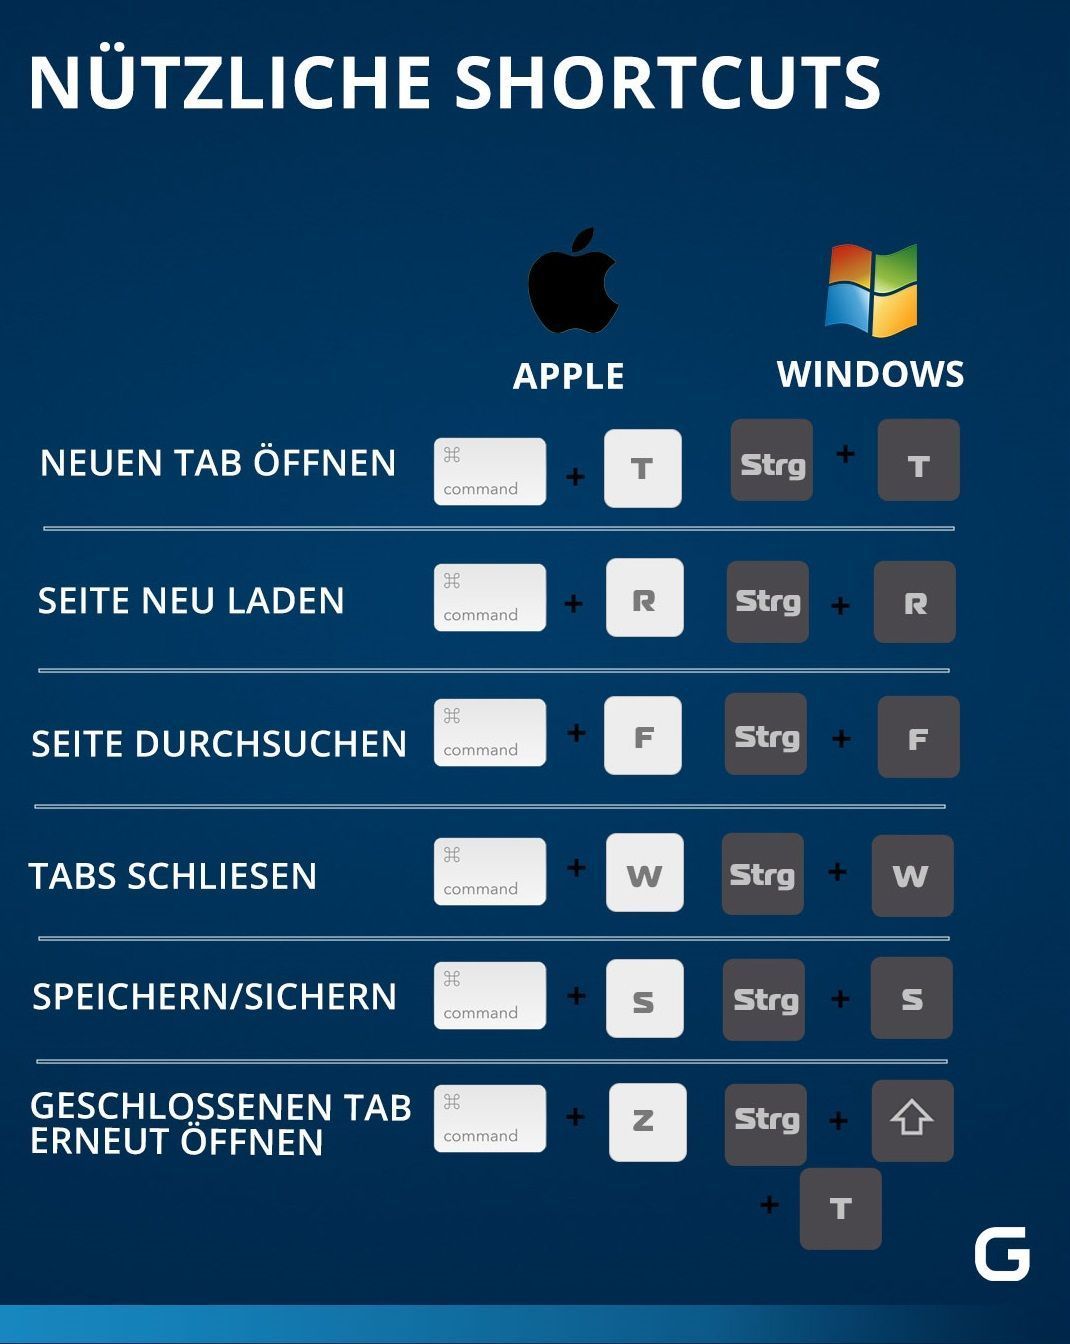 Diese nützlichen Shortcuts gibt es für Apple und Windows. 